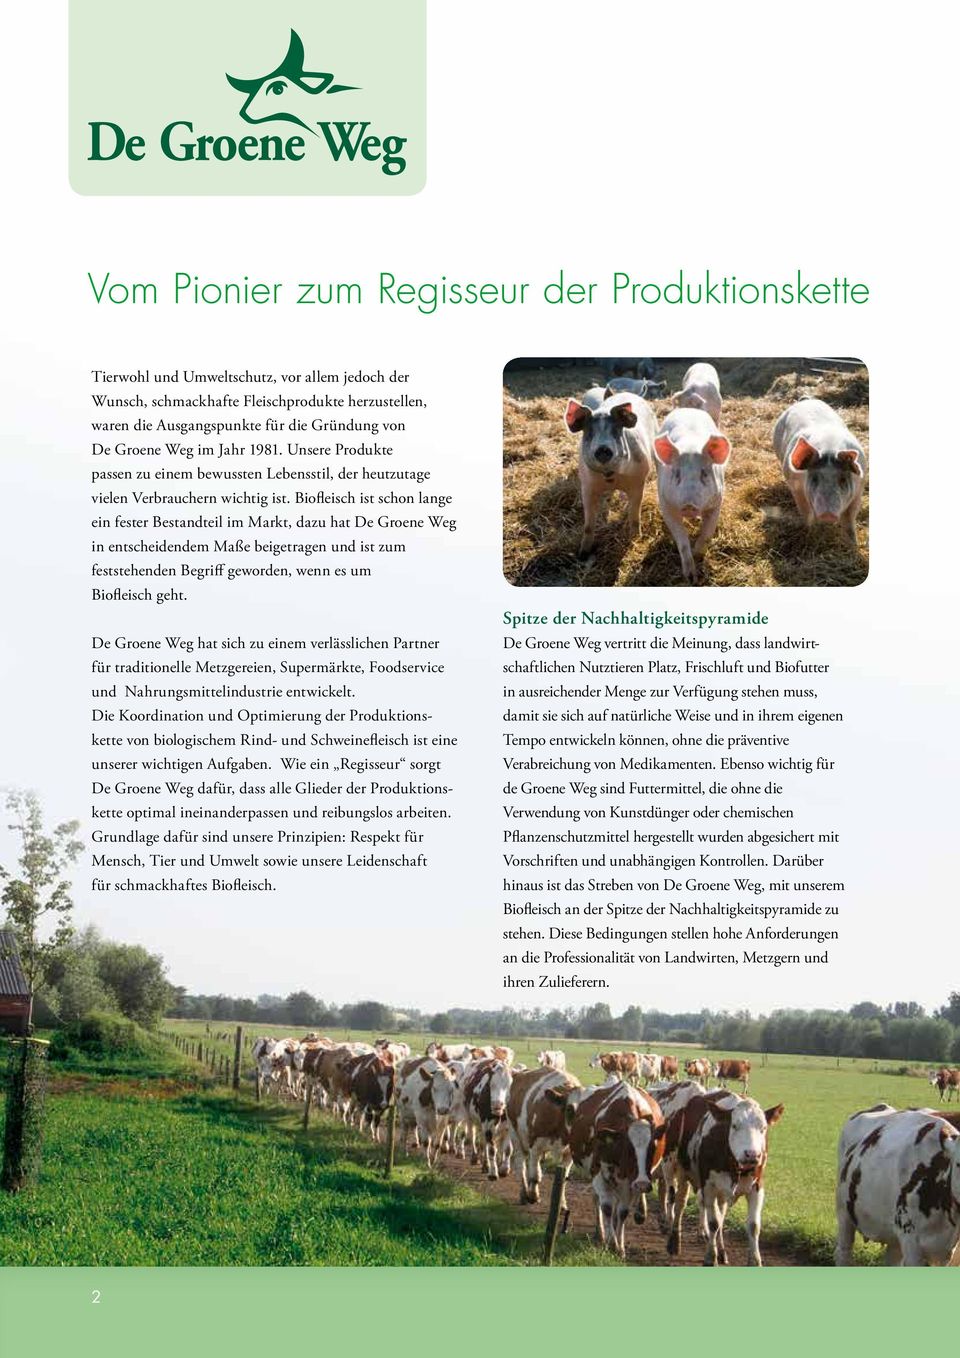 Biofleisch ist schon lange ein fester Bestandteil im Markt, dazu hat De Groene Weg in entscheidendem Maße beigetragen und ist zum feststehenden Begriff geworden, wenn es um Biofleisch geht.